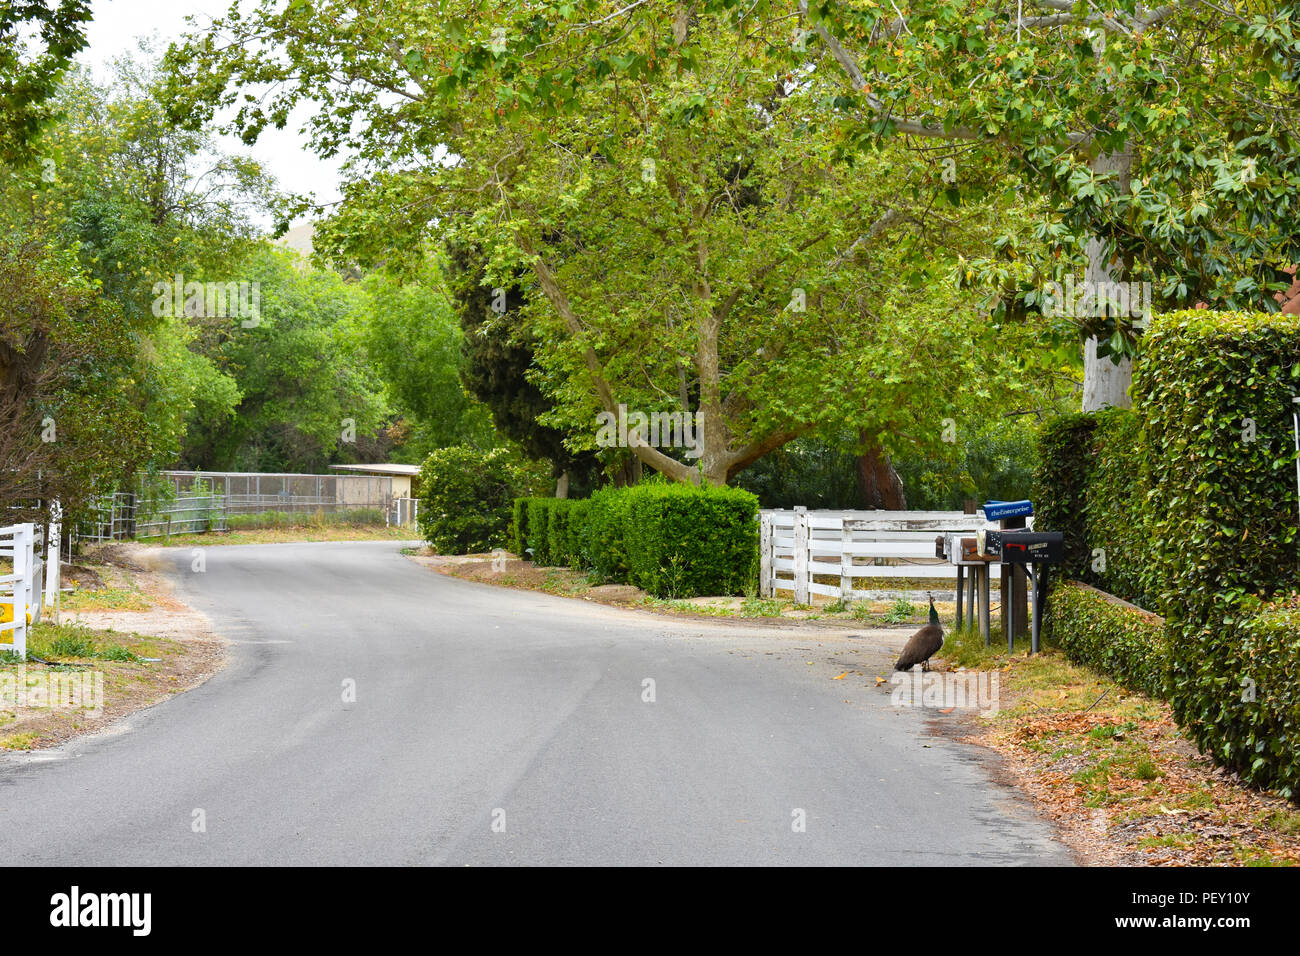 Simi Valley, CA. - Una tranquila comunidad aislada en las estribaciones de Simi Valley, CA. con un pavo real a lo largo de la sinuosa carretera. Foto de stock